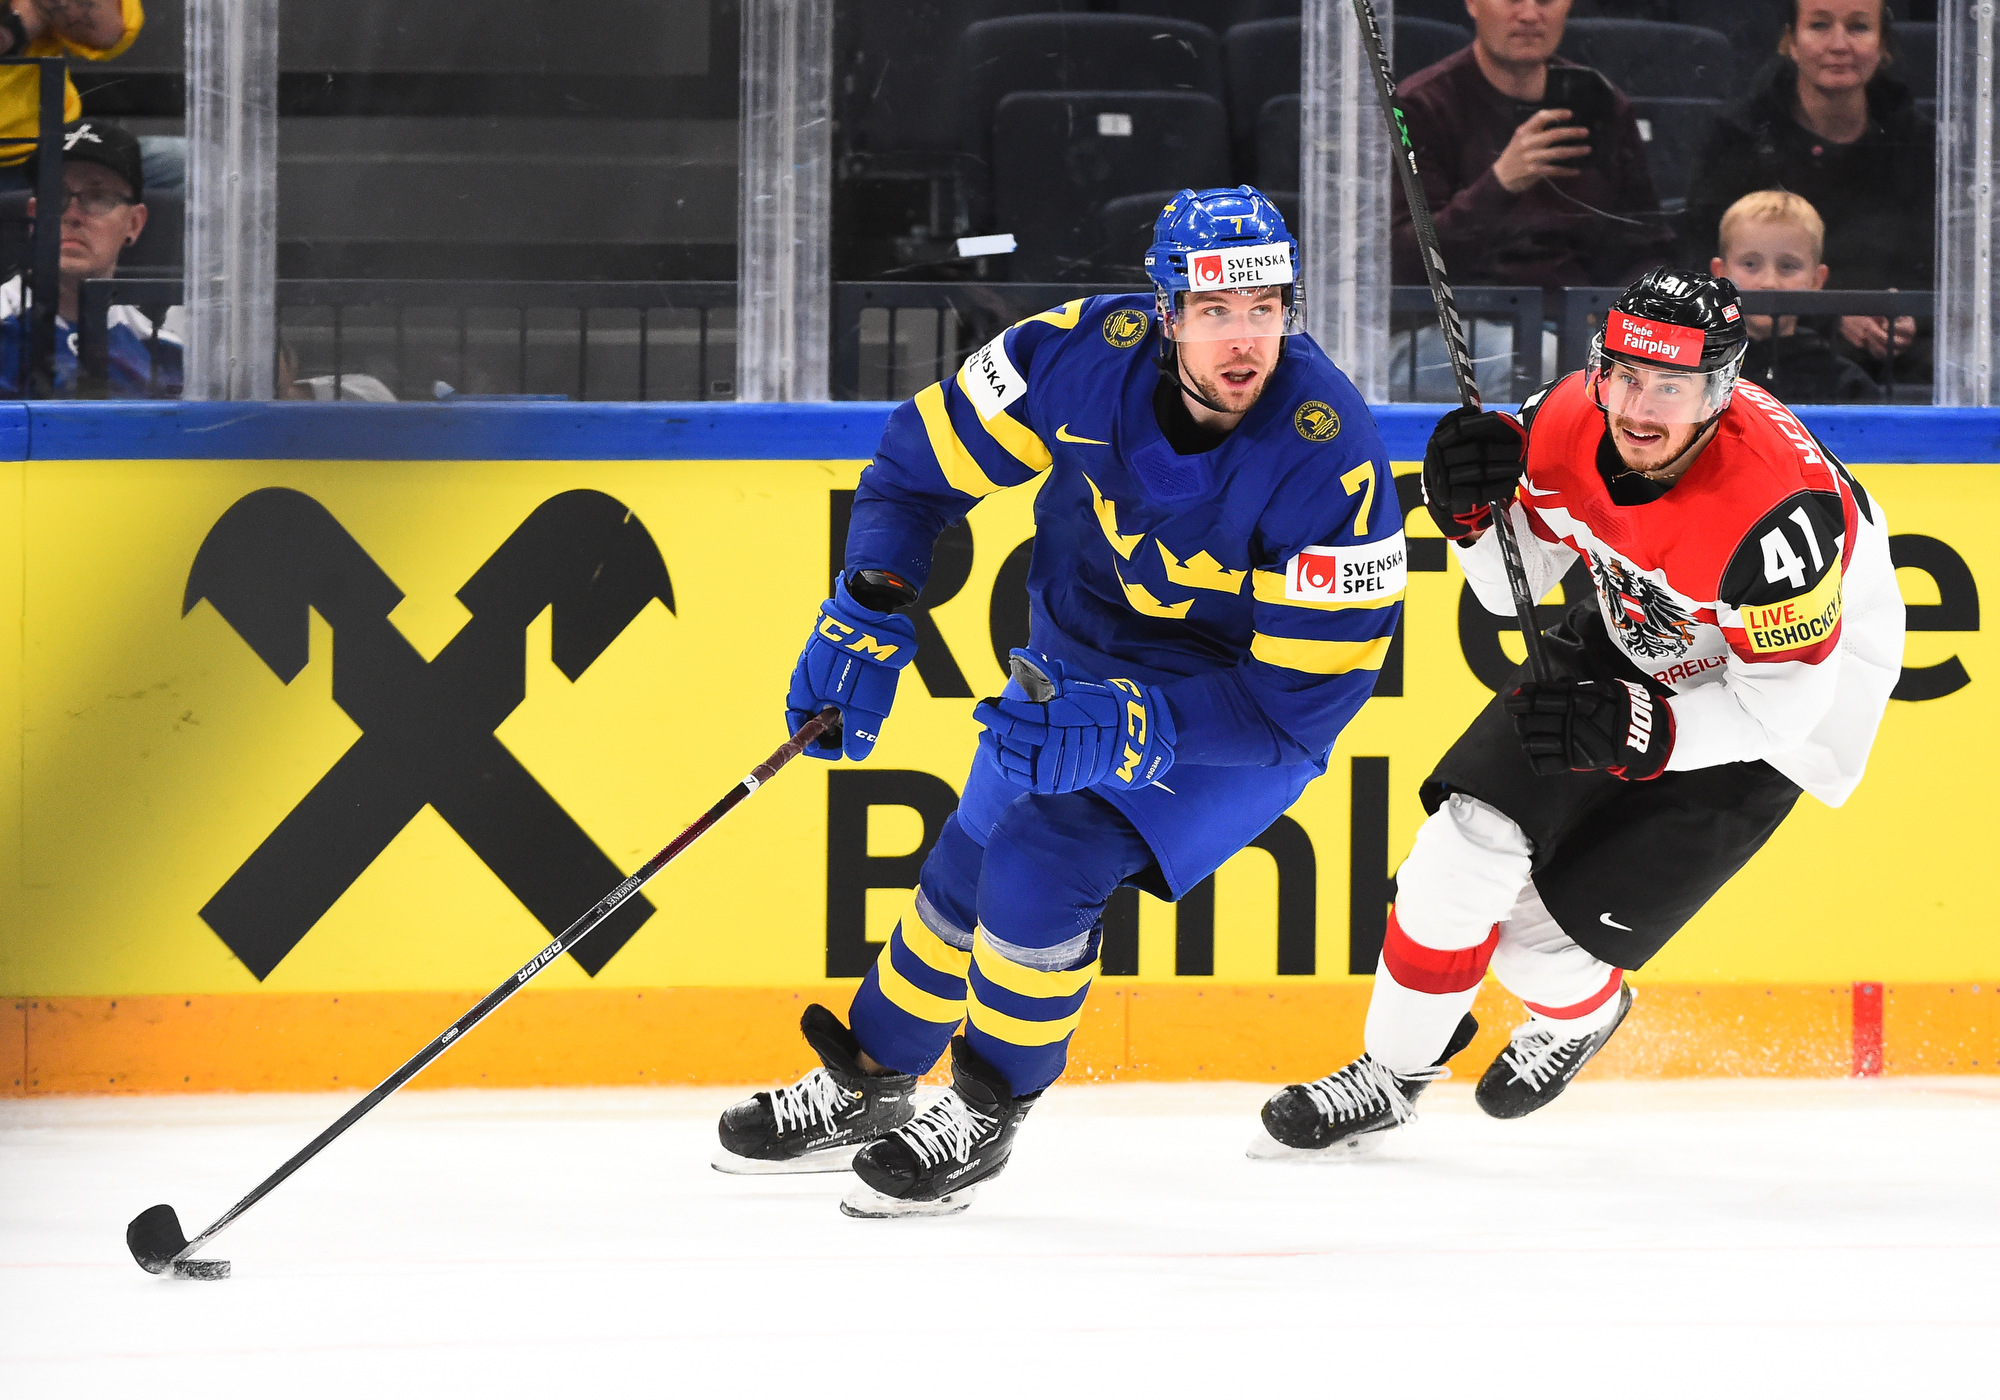 IIHF - Gallery Sweden vs Austria